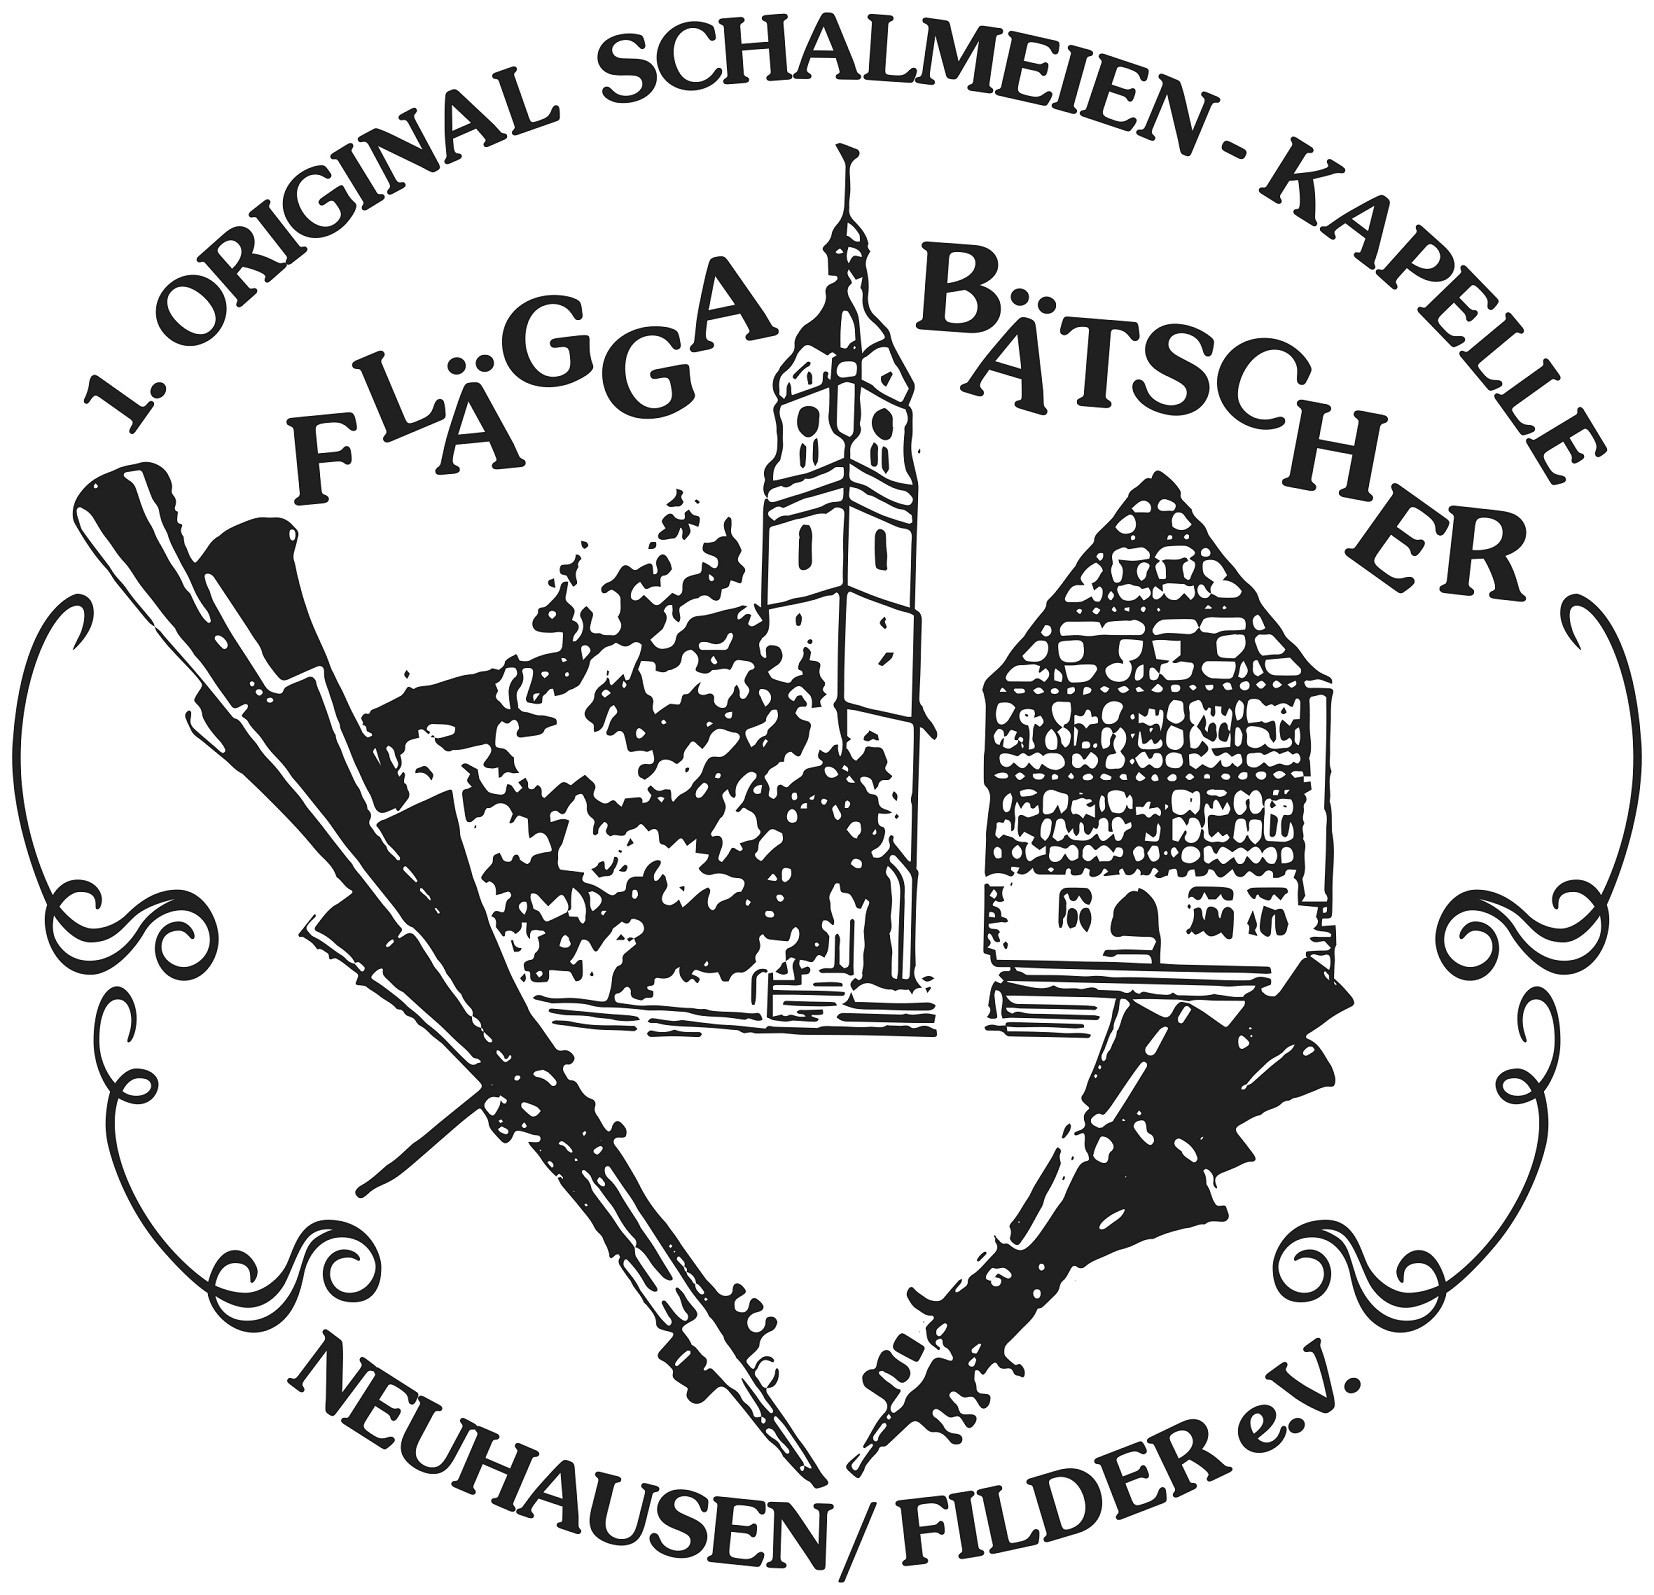 Flägga-Bätscher 1.Original Schalmeien Kapelle Neuhausen / Filder e.V.